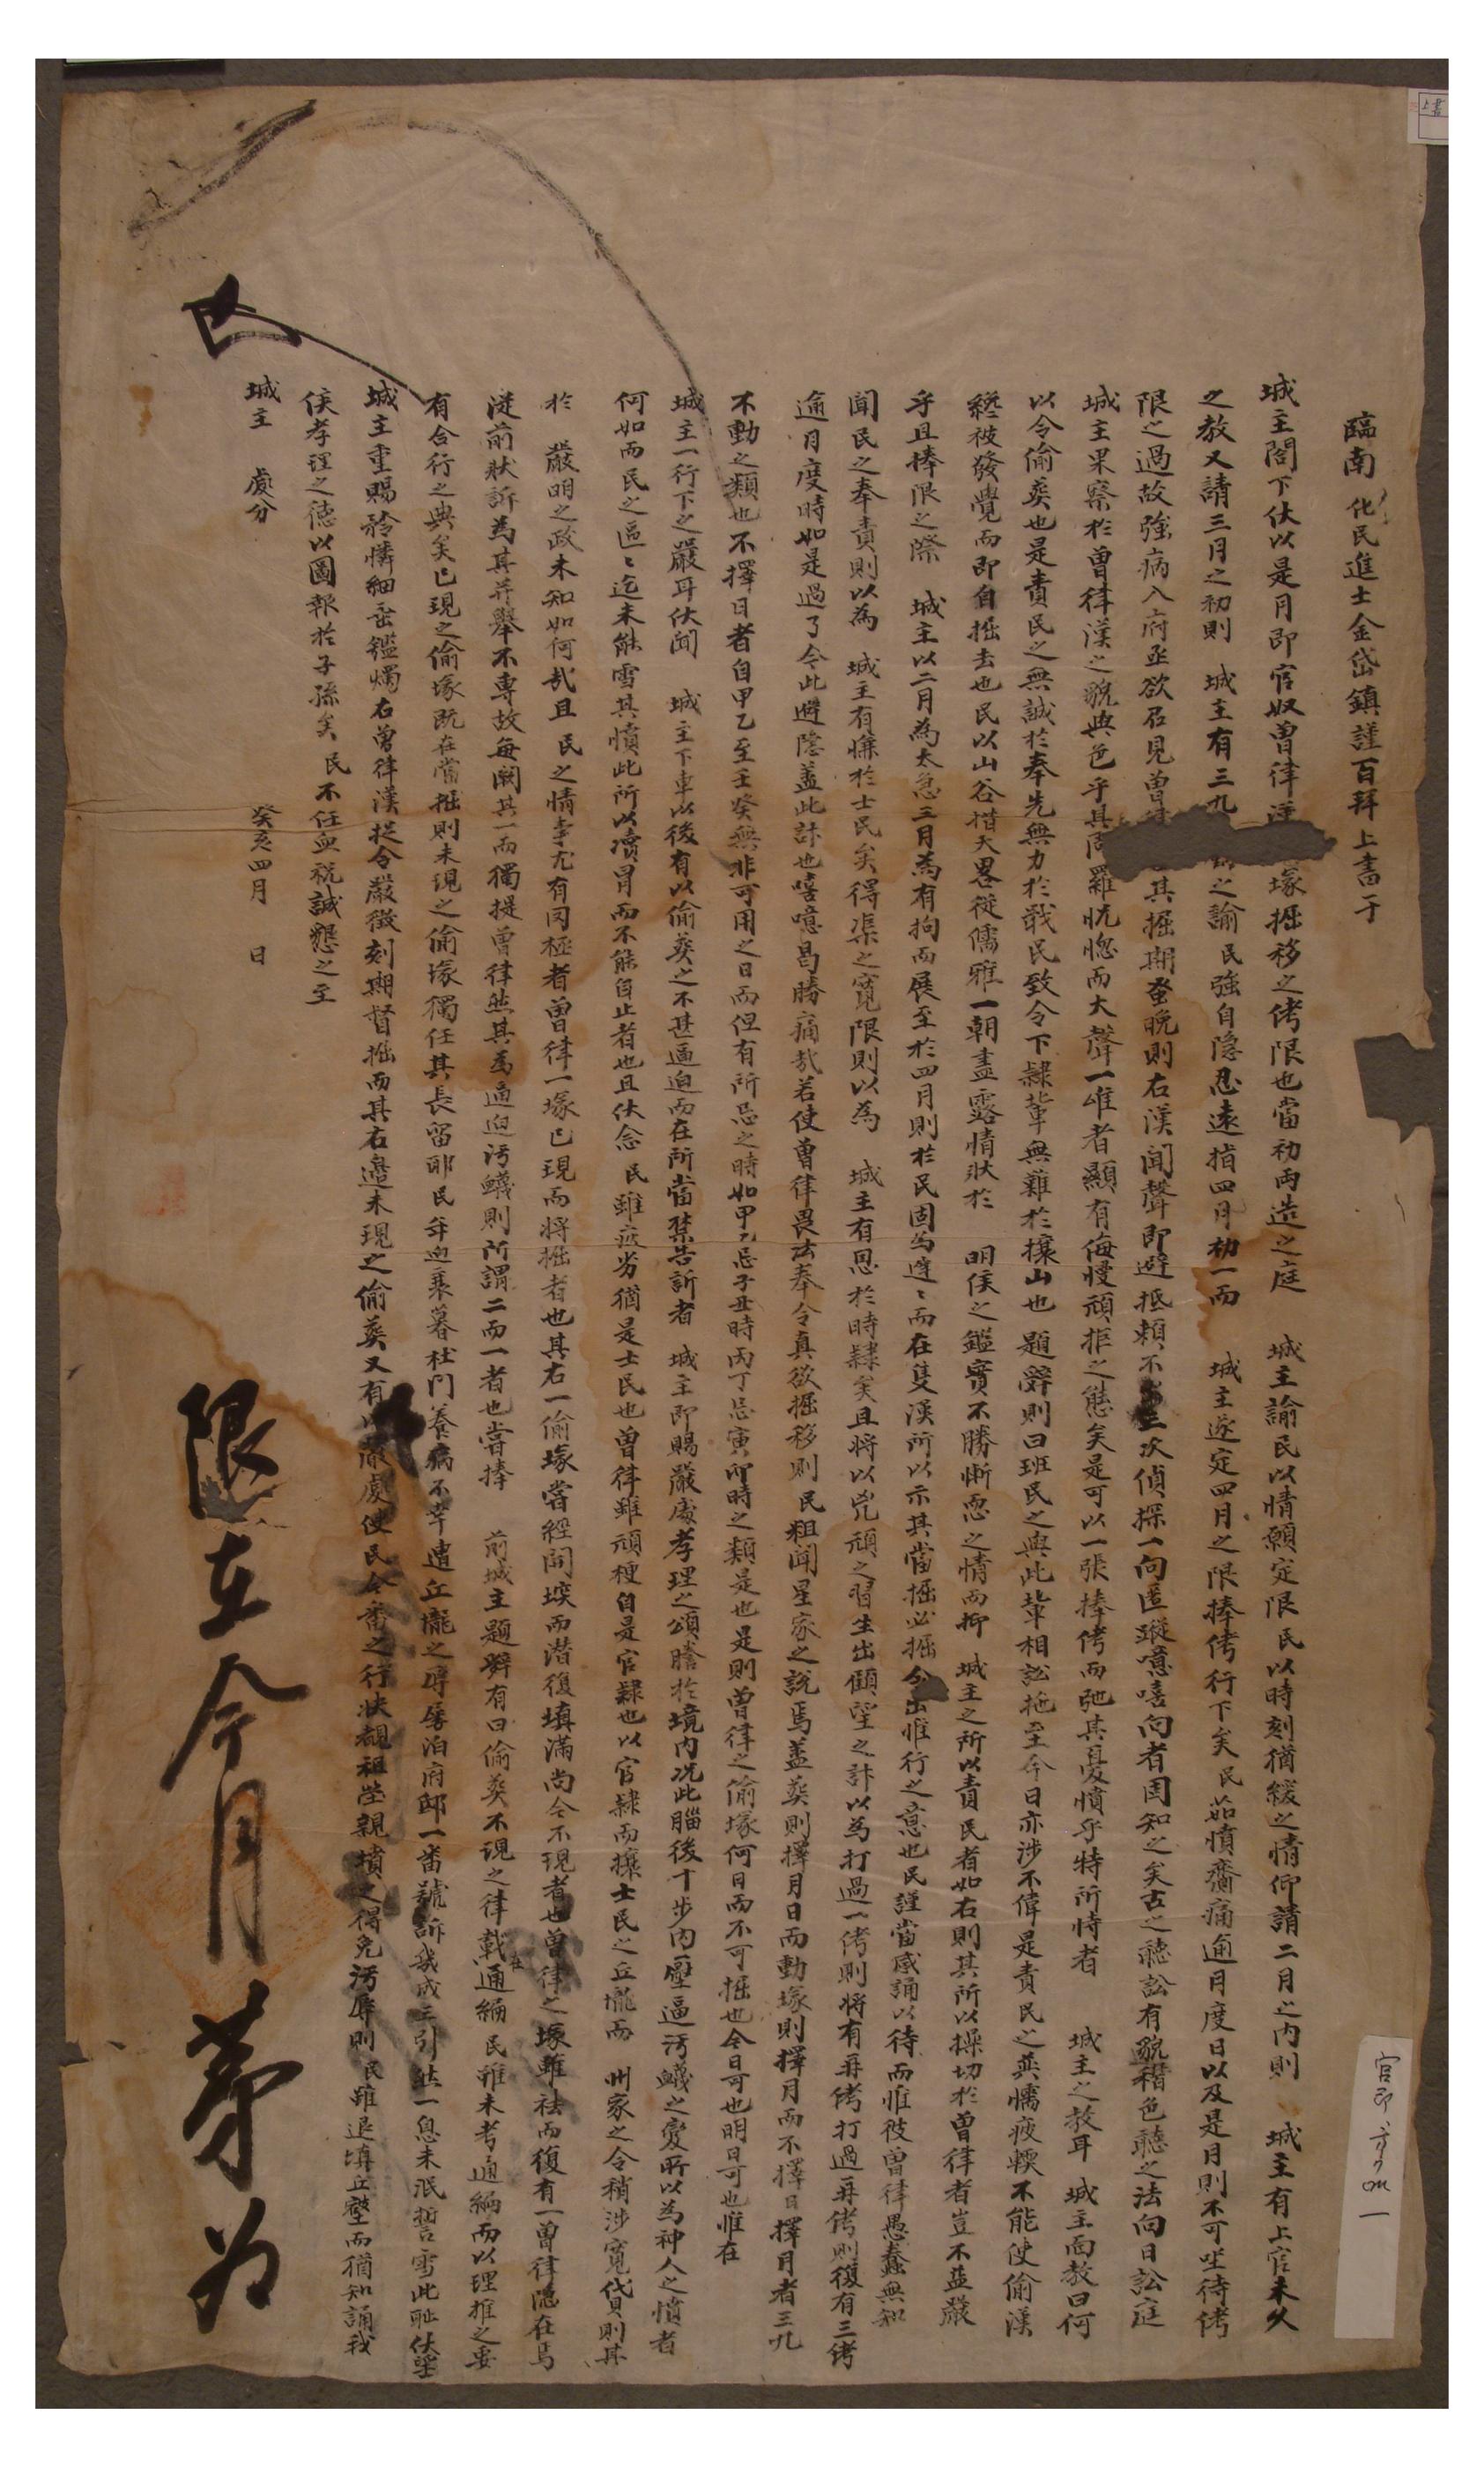 1863년4월에 관노의 투장을 기한 내에 시정해줄 것을 청하는 김대진의 소장